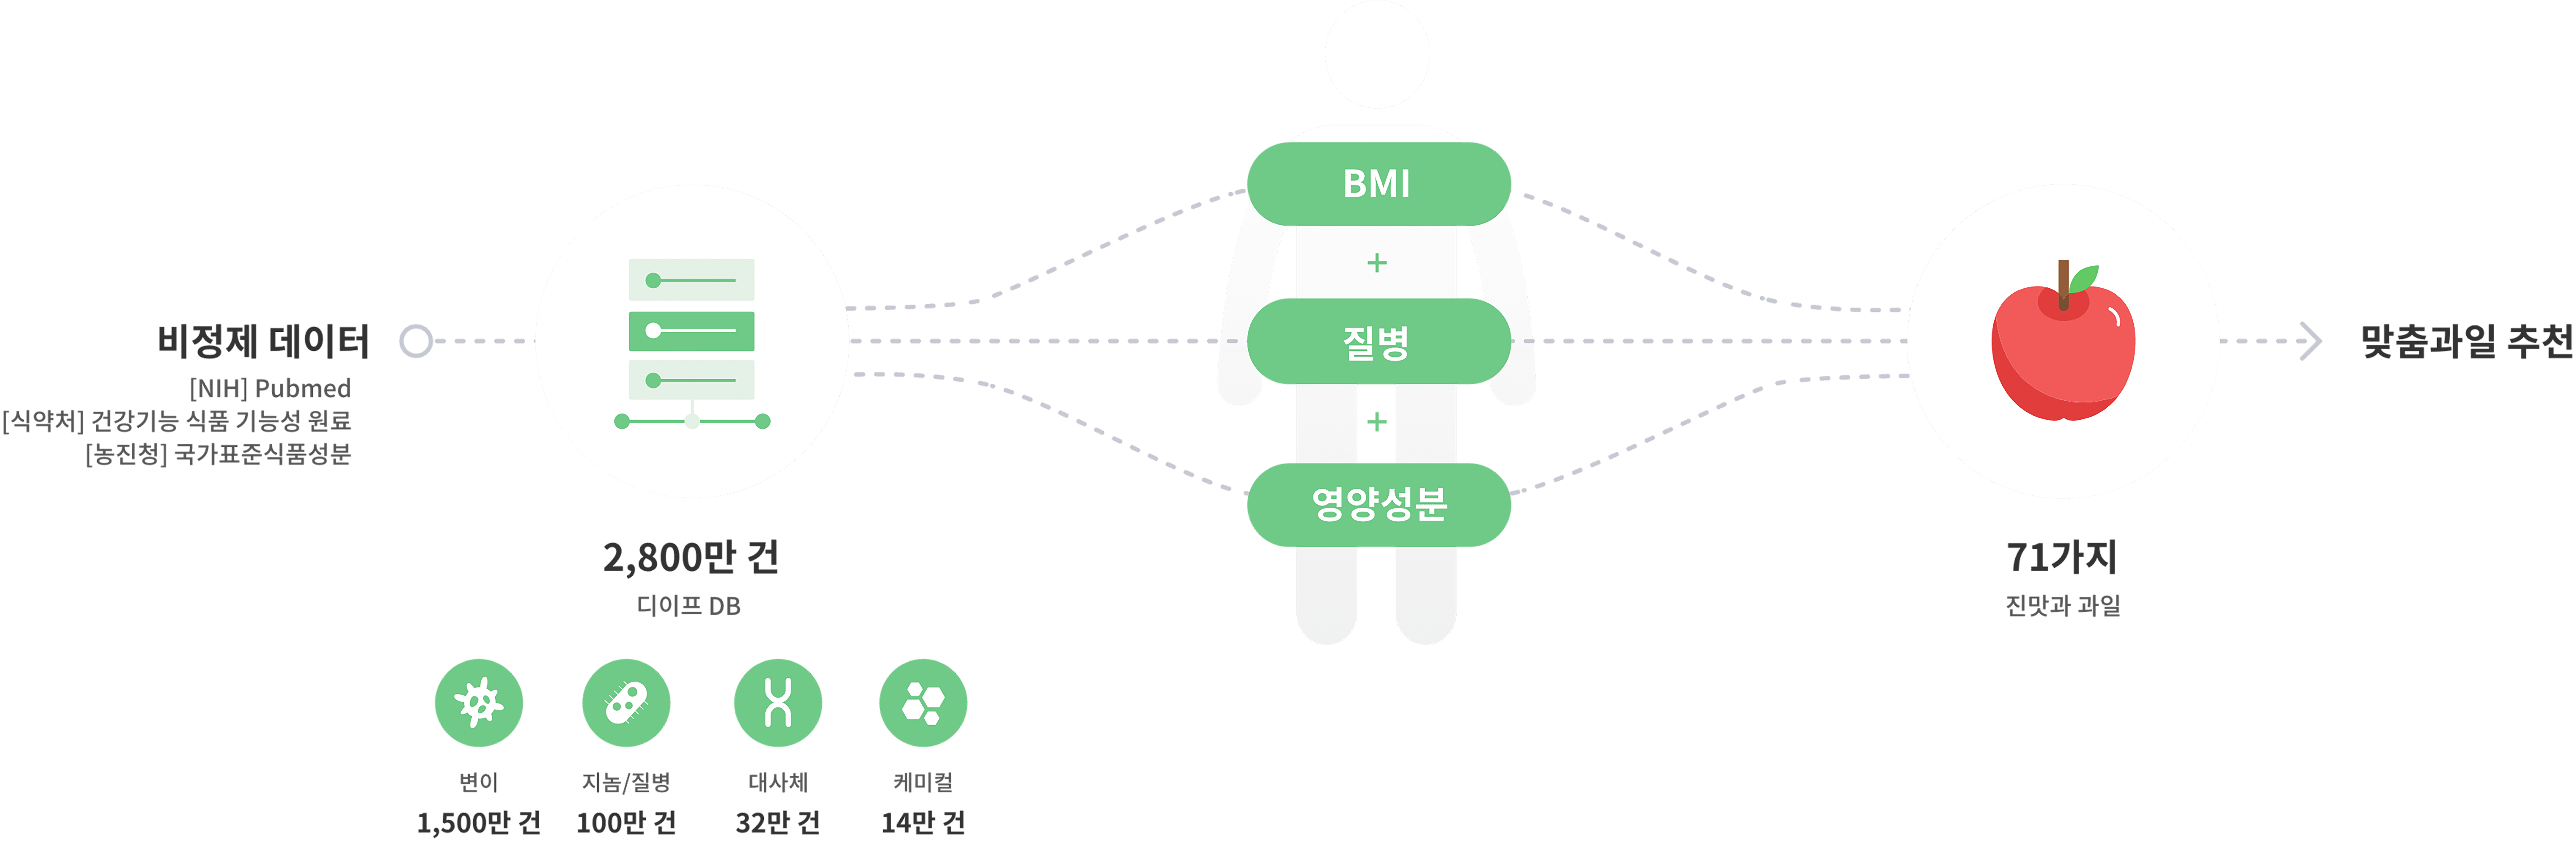 비정제 데이터 2,730만건 -> BMI + 질병 + 영양성분 -> 71가지 맞춤과일 배송